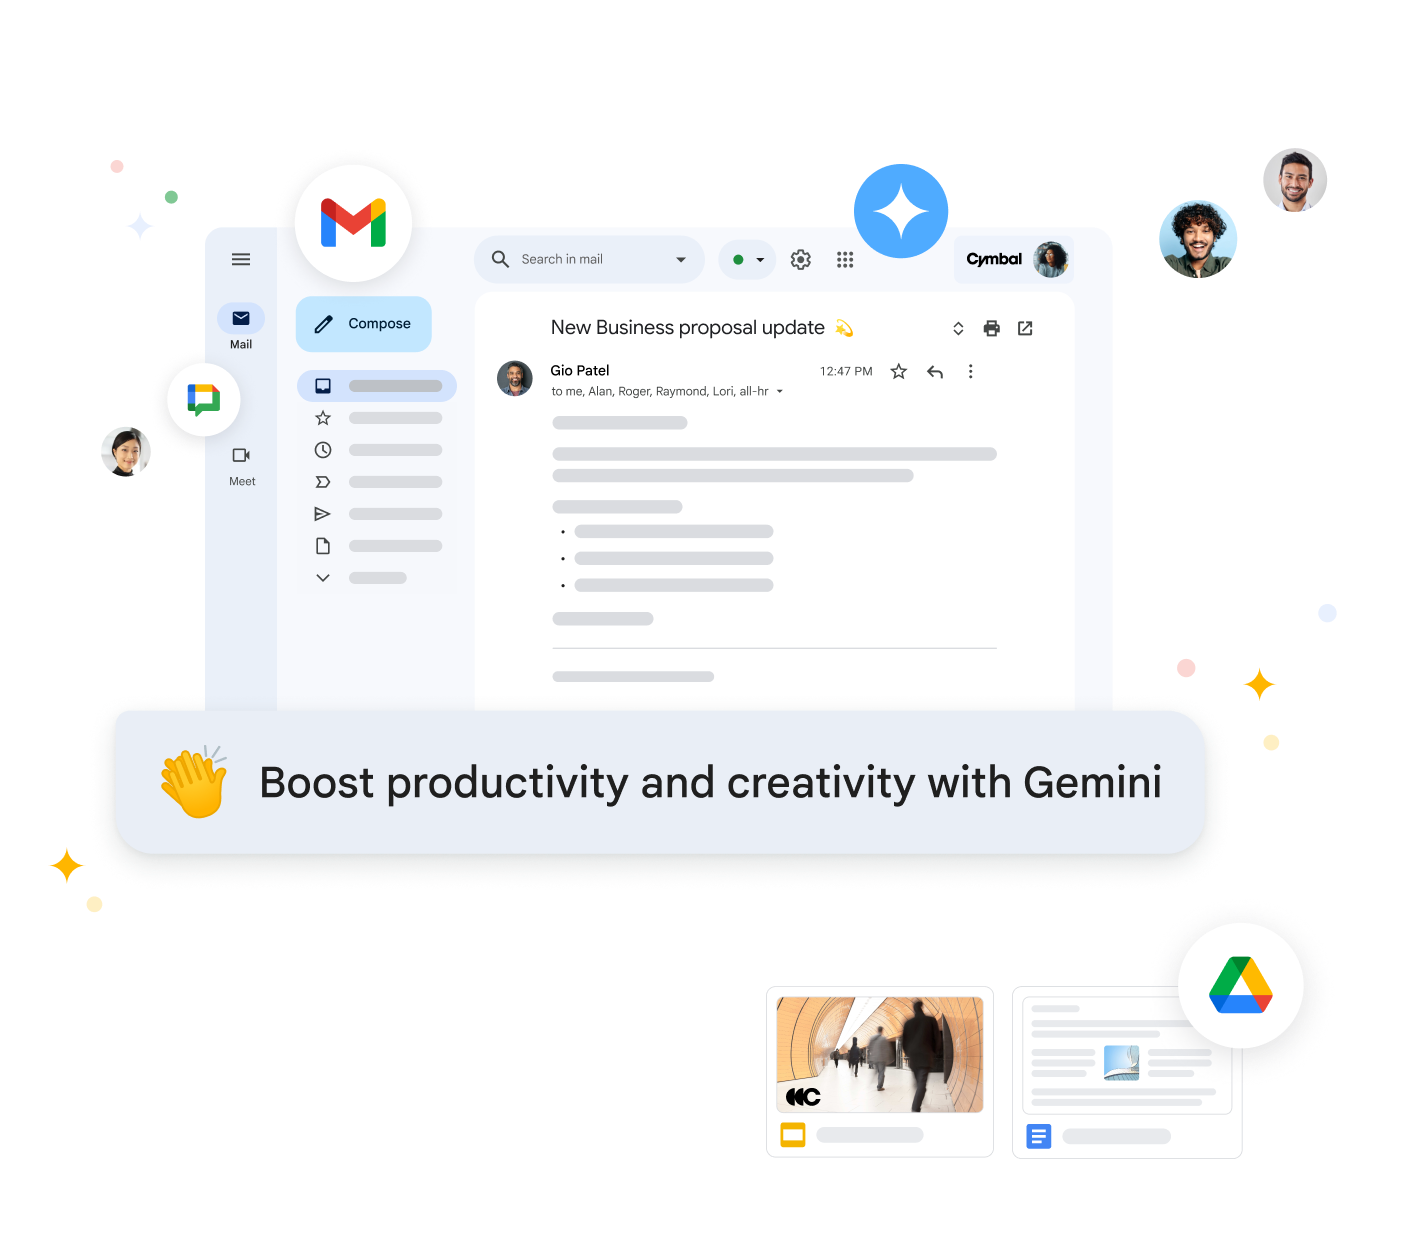 Workspace için Gemini, Gmail'de e-postaları özetleyerek ve e-postalara yanıt önerisinde bulunarak üretkenliğinizi artırmanıza yardımcı olur.